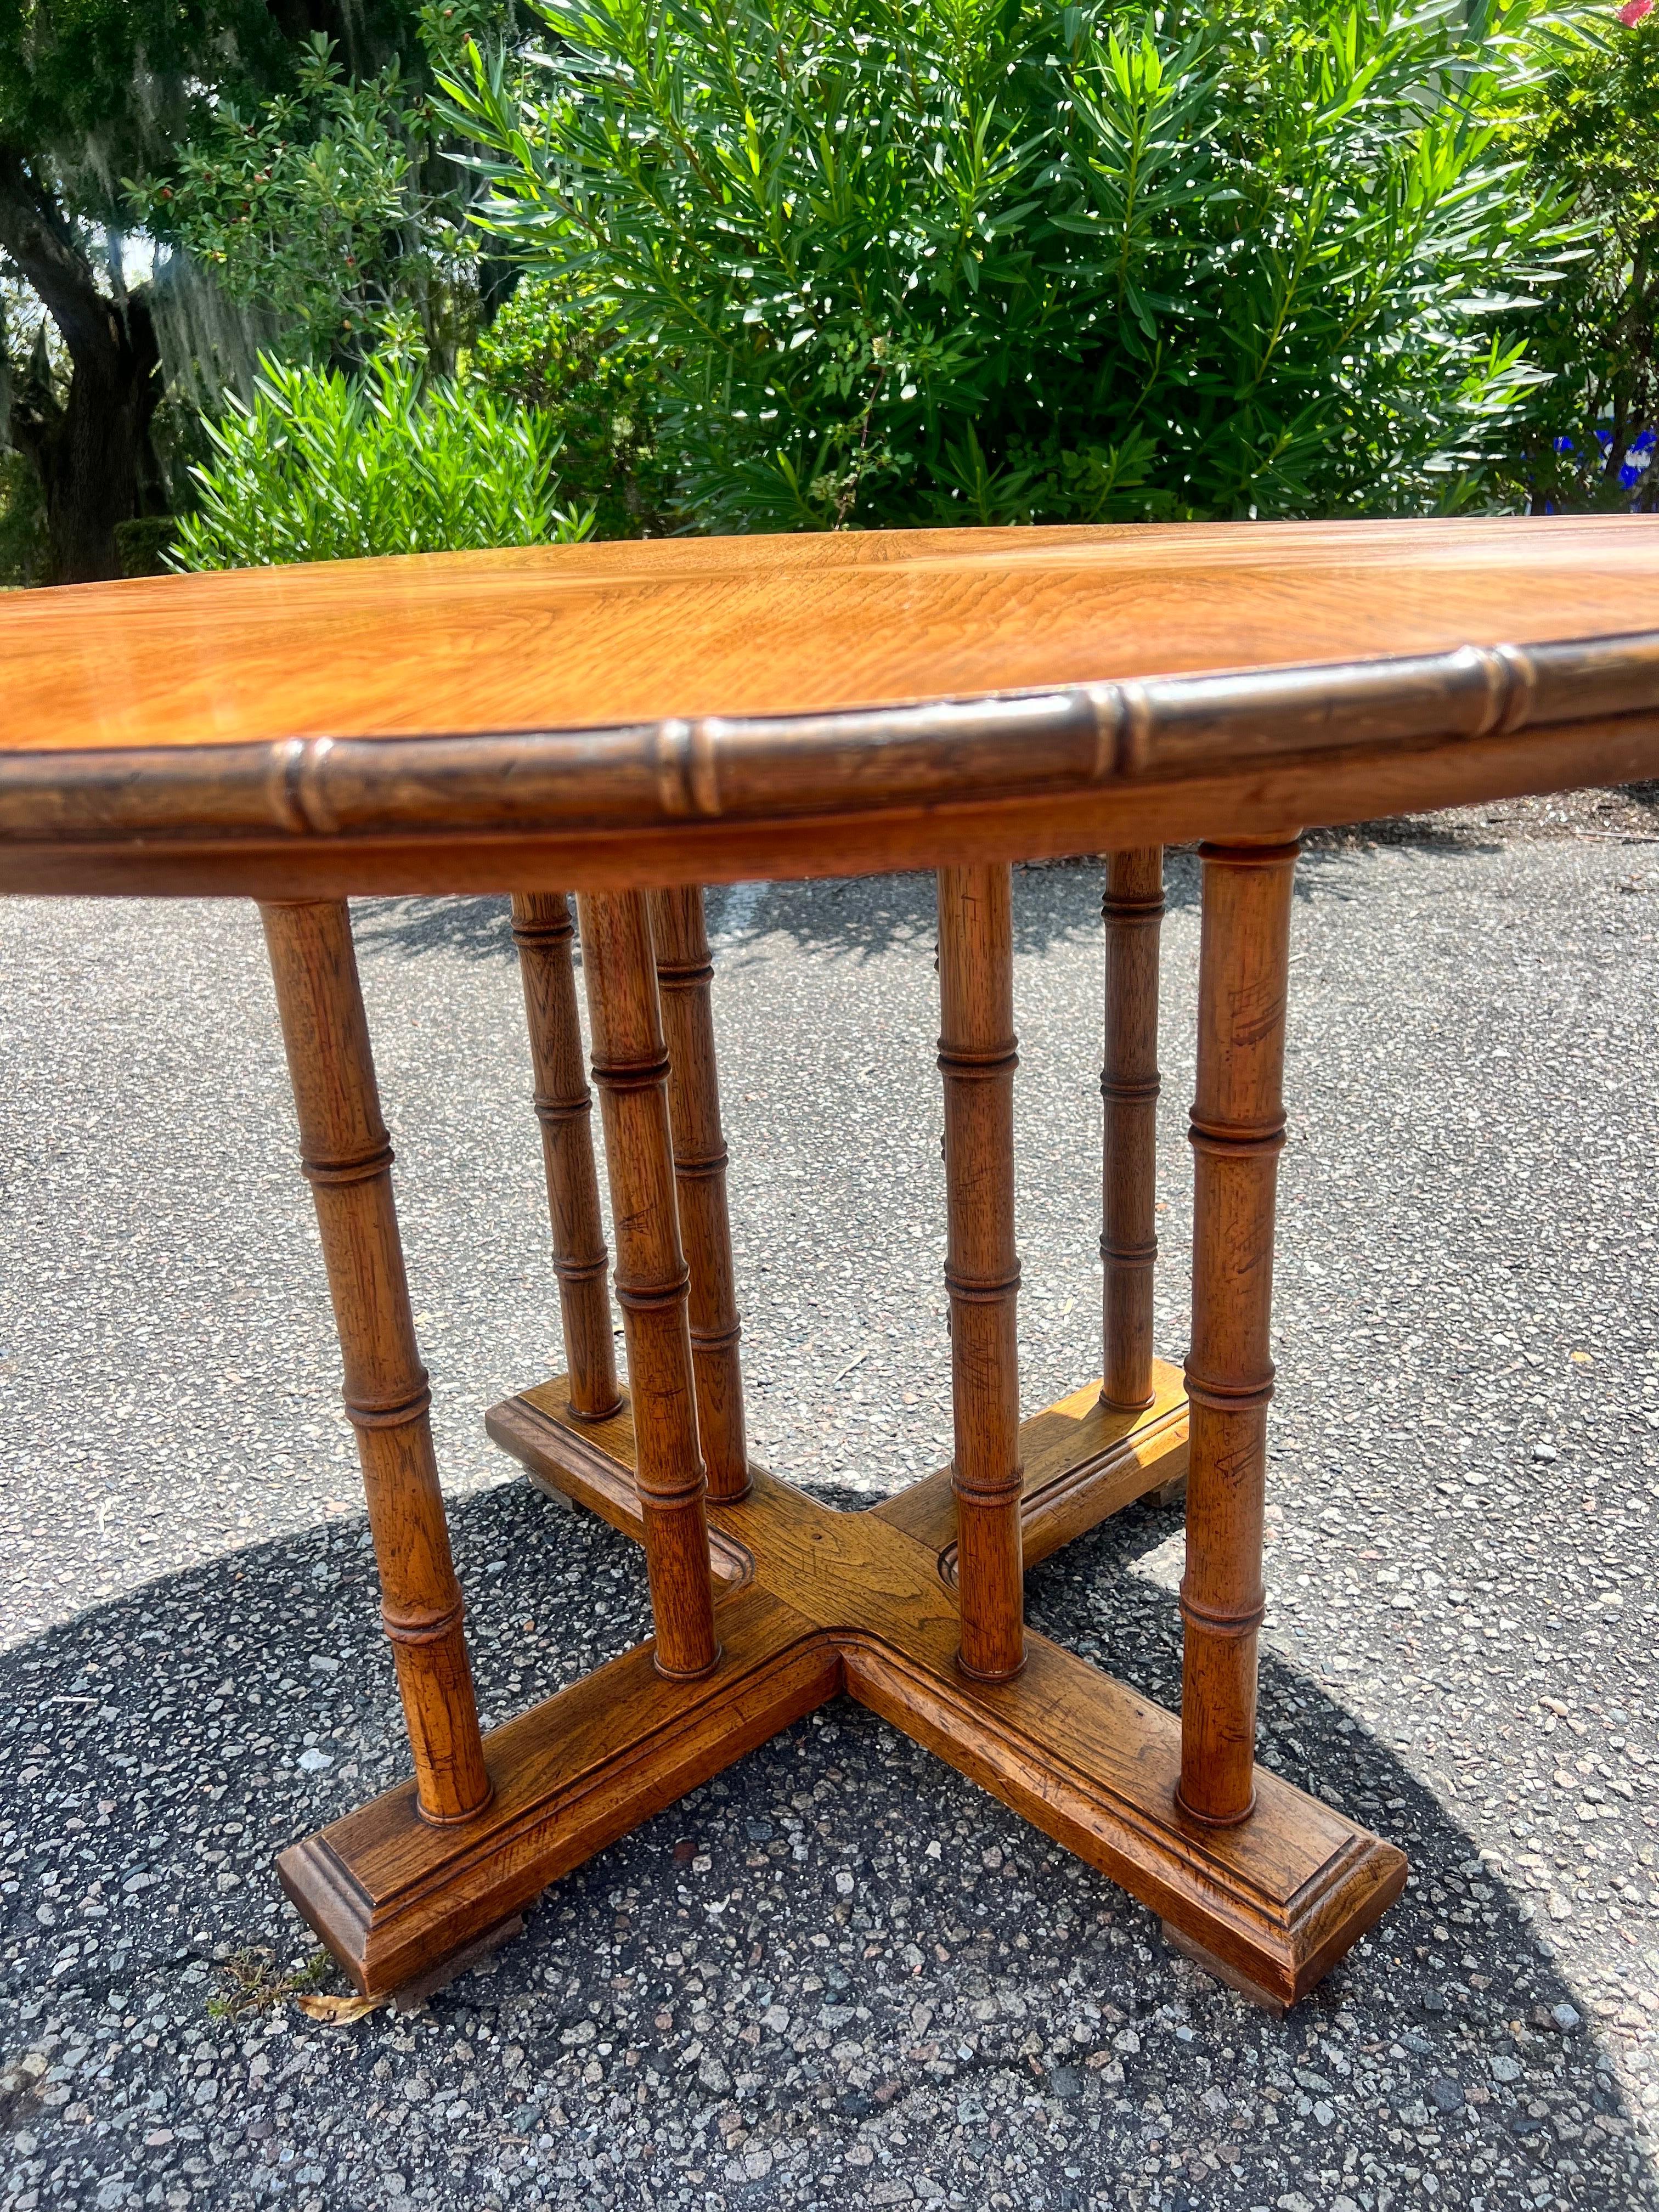 Vintage 1960's pedestal base table avec 2 faux fuseaux de bambou reliant les 4 pieds au plateau de la table totalisant 8.    Le plateau de la table est également entouré d'une bande de bambou en faux bois sculpté.   La table a un très beau grain de